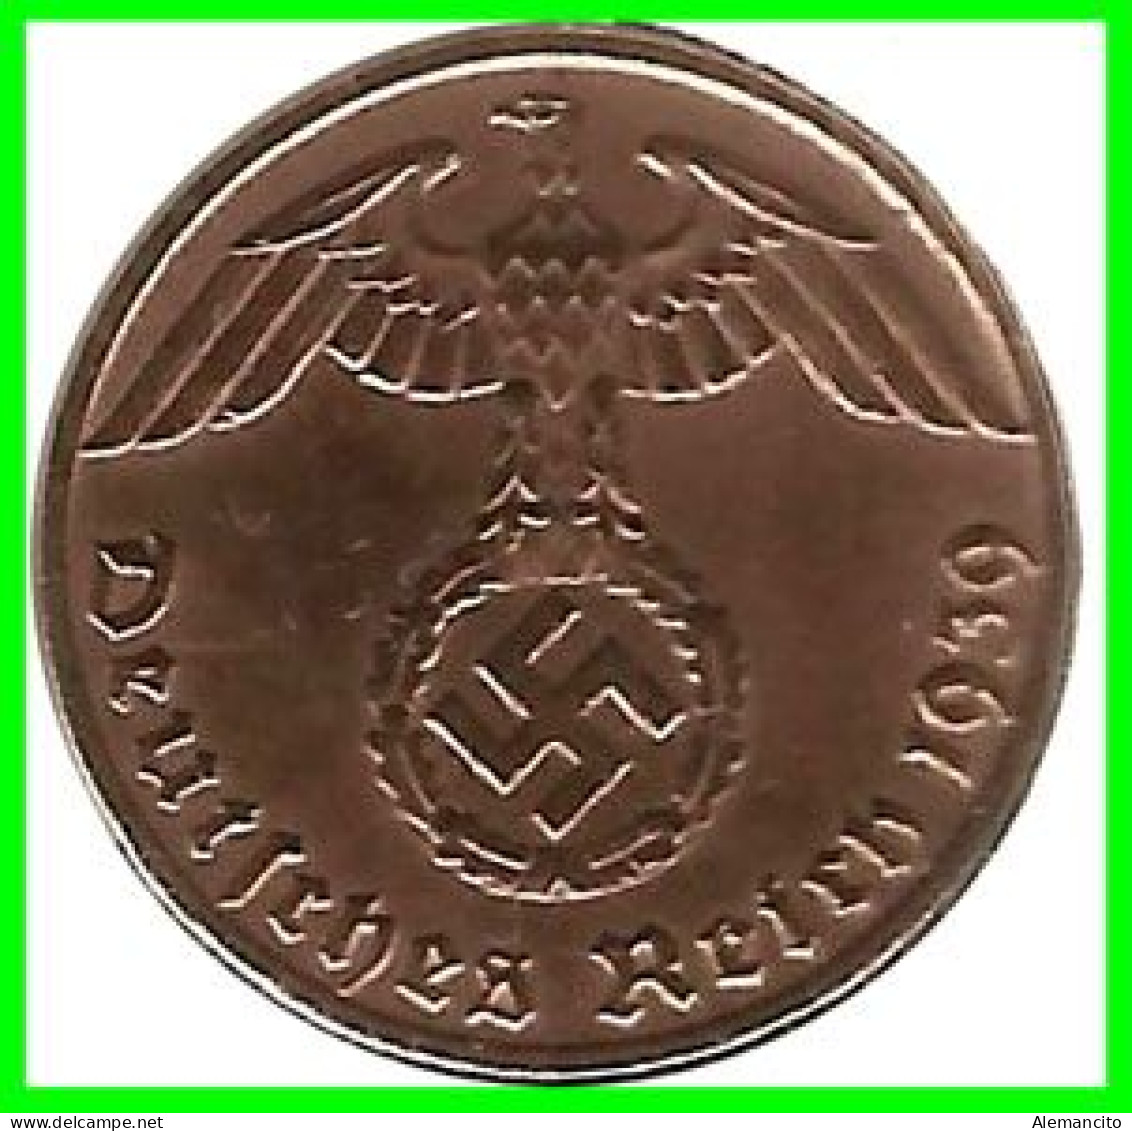 GERMANY - ALEMANIA DEUTFCHES REICH SERIE DE 7 MONEDAS DE 0.01 REICHSPFENNIG AÑO 1939 BRONCE 2ª GUERRA MUNDIAL - 1 Reichspfennig